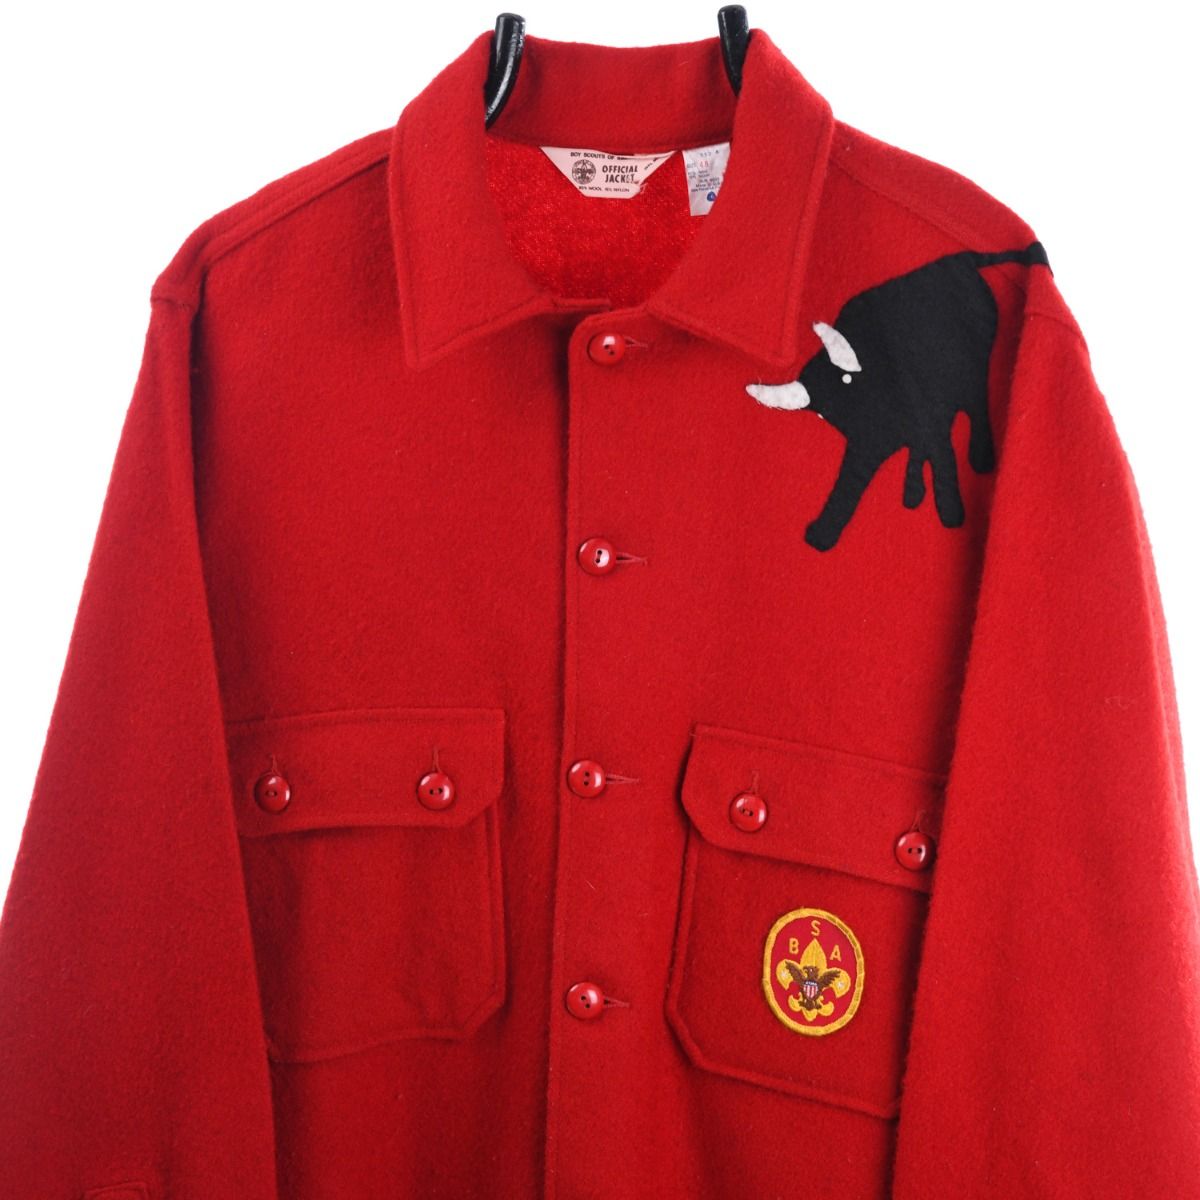 Boy Scouts of America 1970s Wool Jacket